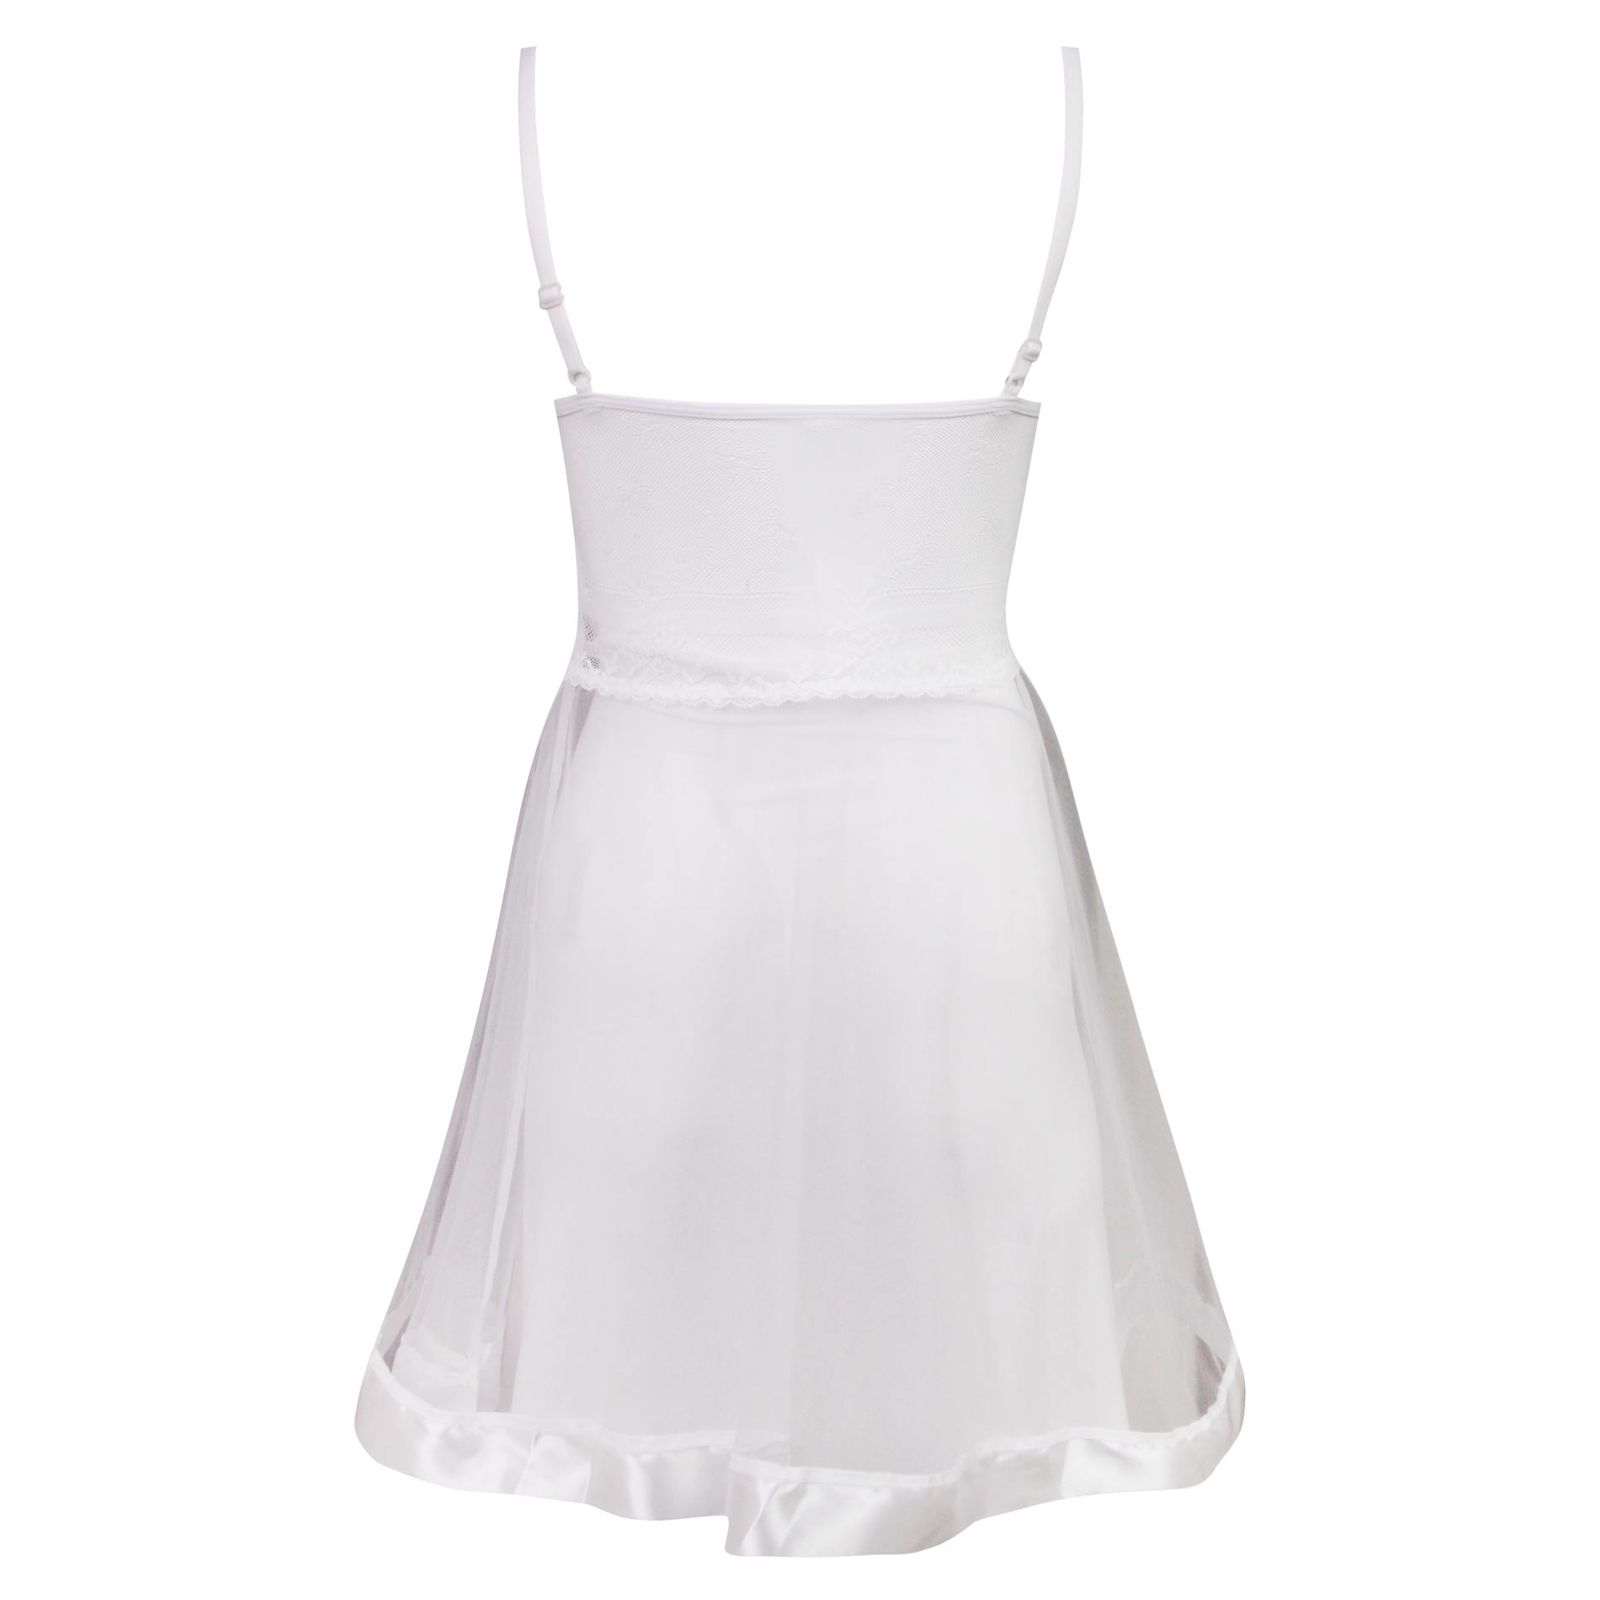 لباس خواب زنانه ماییلدا مدل گیپور گلدار کد 3685-820 رنگ سفید -  - 3